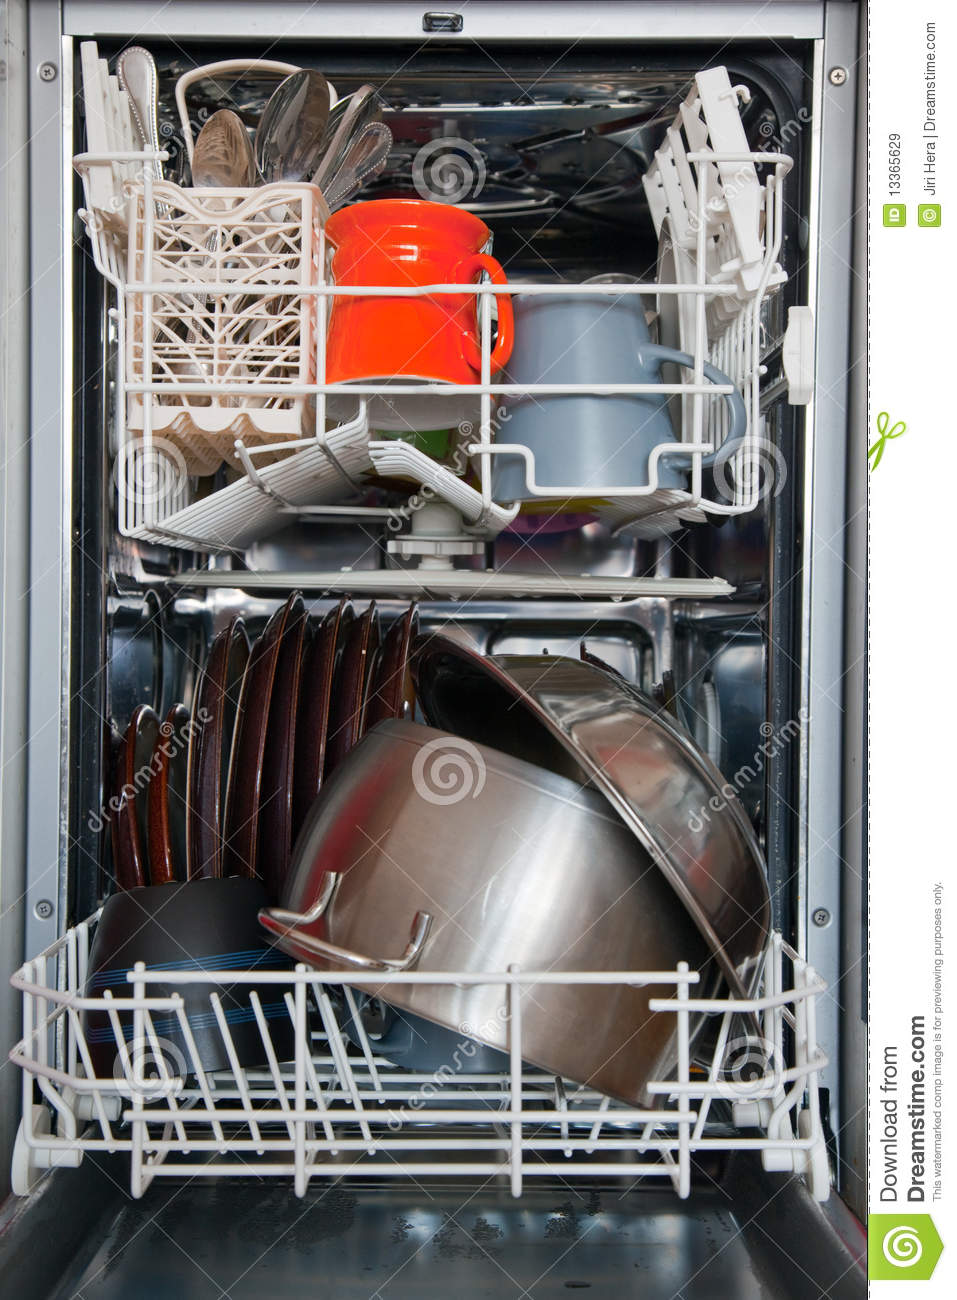 Open Dishwasher Royalty Free Stock Images   Image  13365629